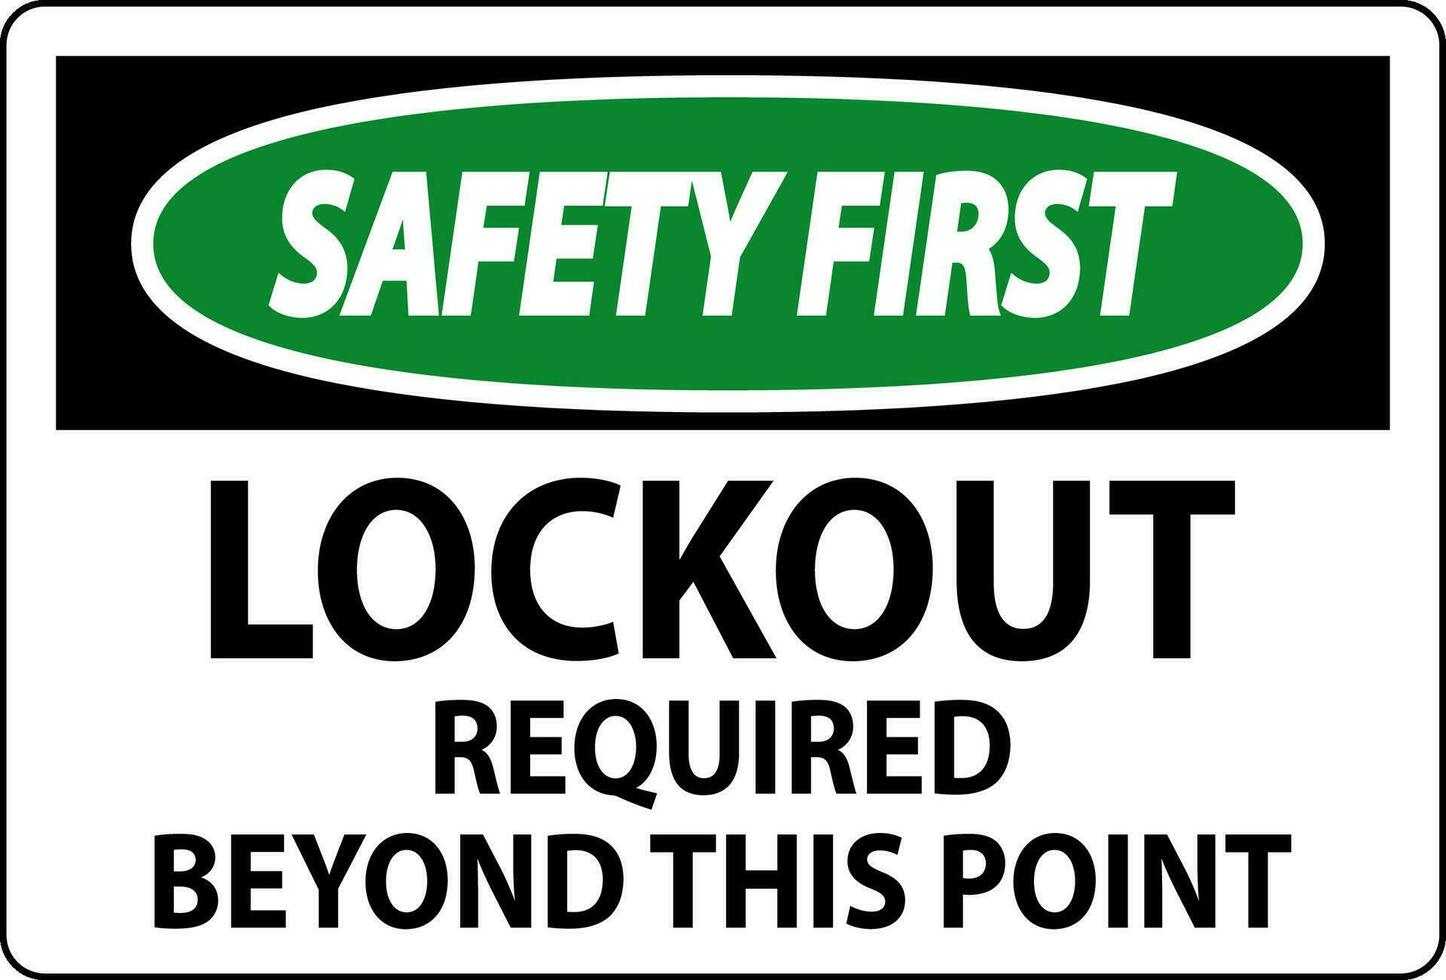 säkerhet först tecken, lockout nödvändig bortom detta punkt vektor